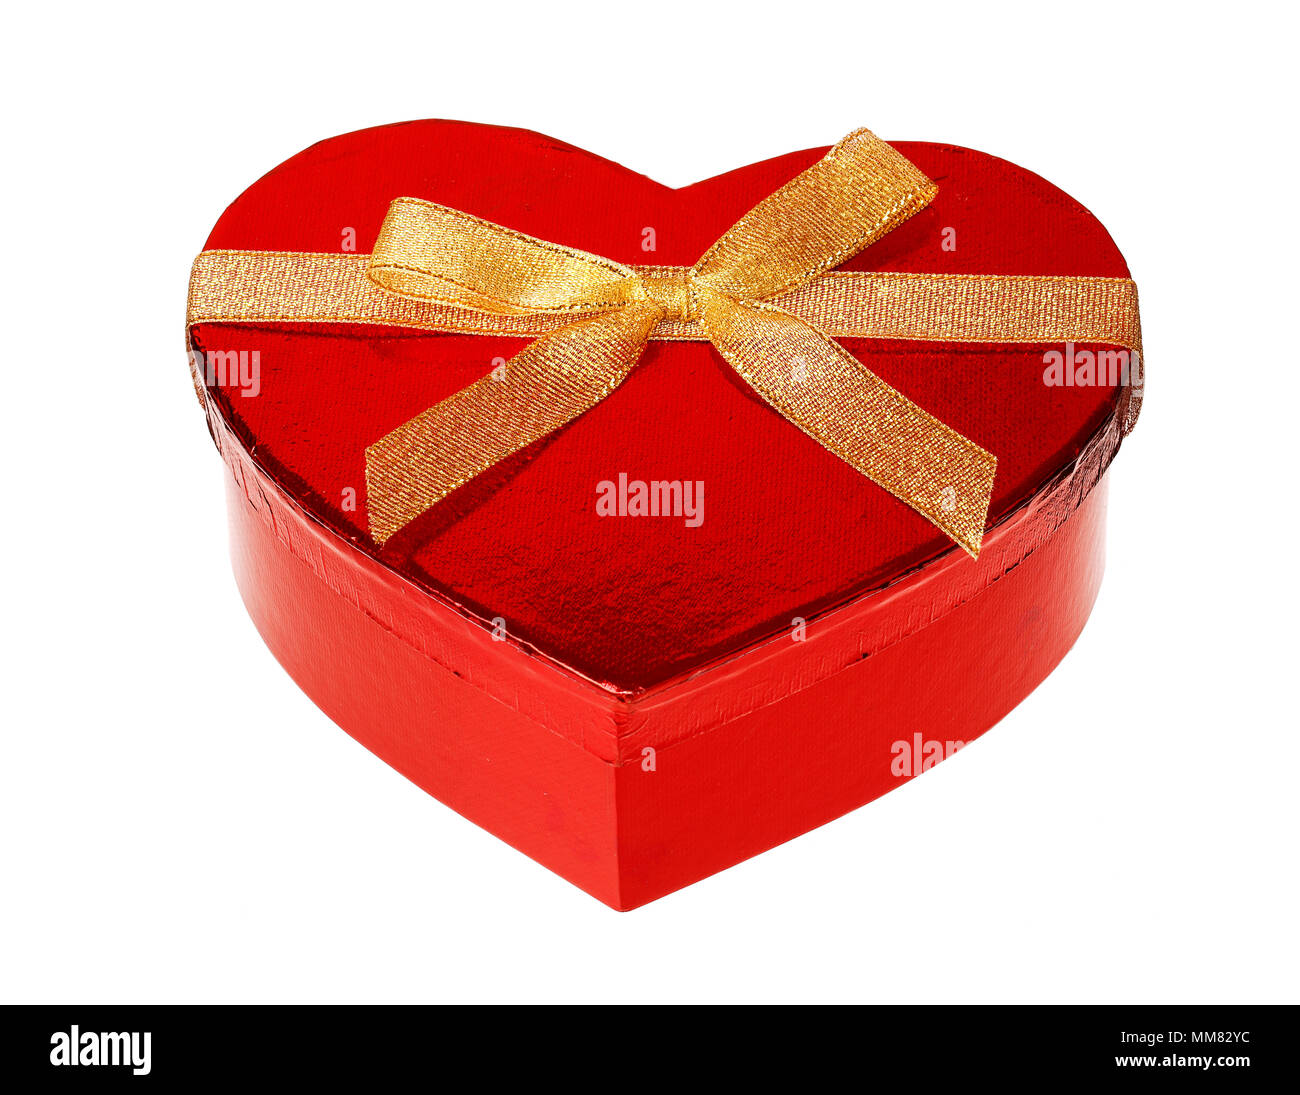 Ein Herz geformt unopend rot glänzend Geschenkbox mit Goldband, auf weißem Hintergrund. Stockfoto